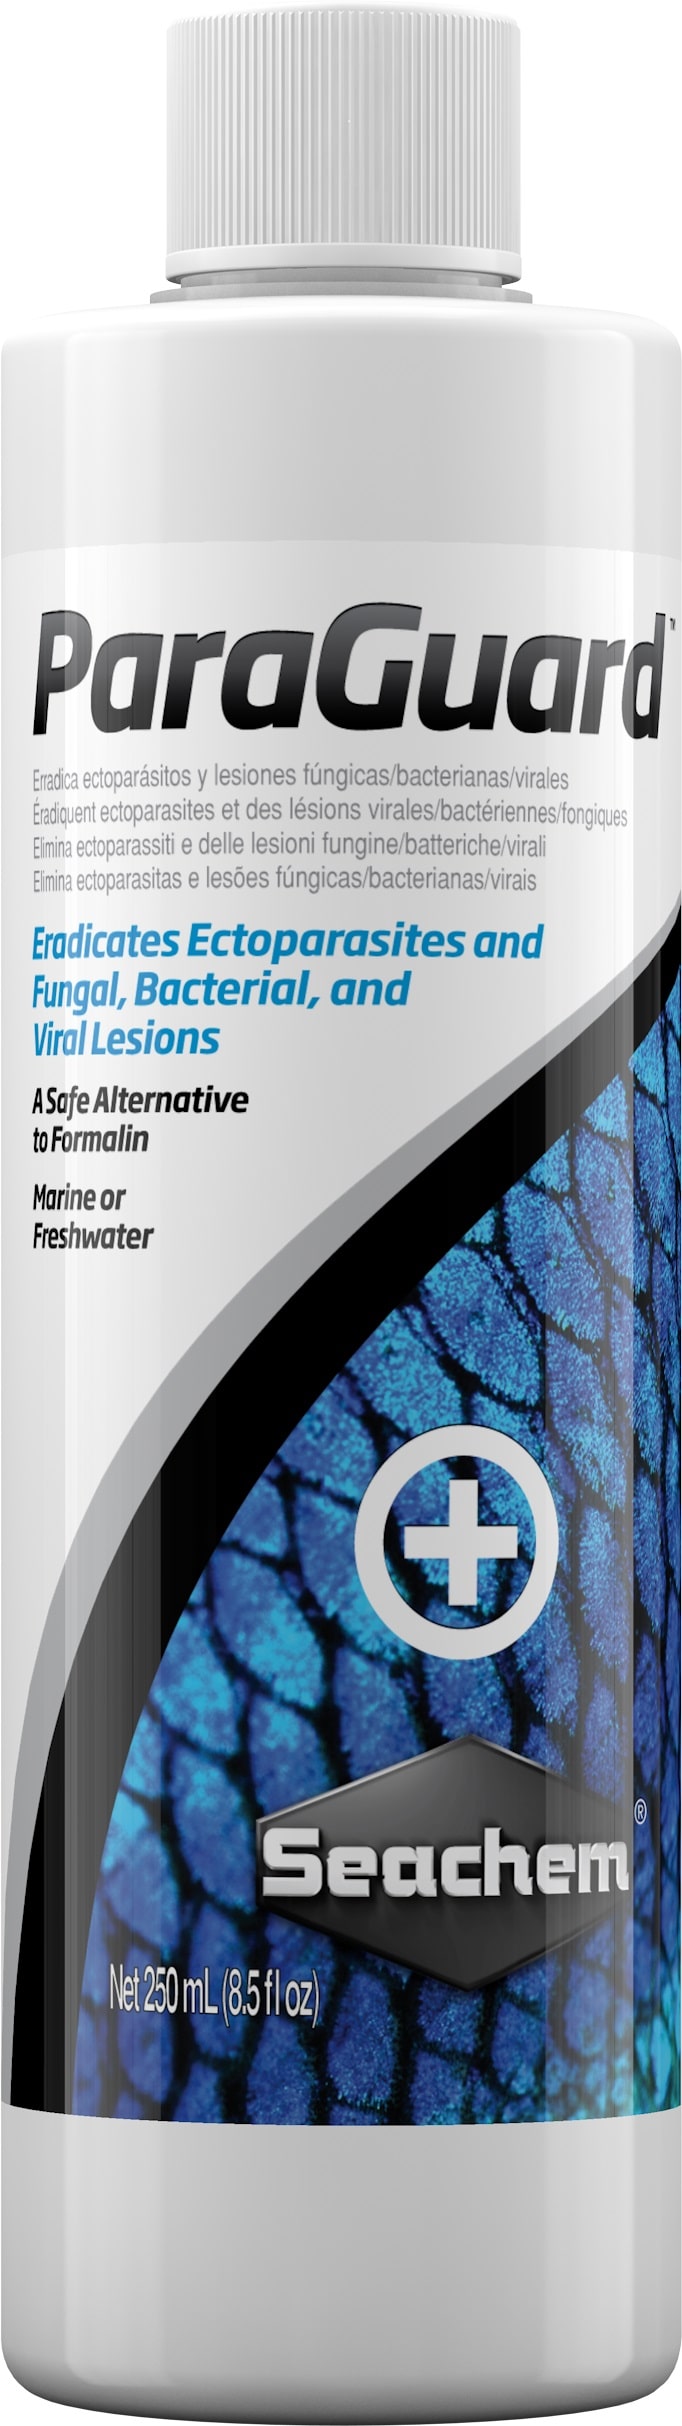 SEACHEM ParaGuard 250 ml traitement contre les ectoparasites et lésions fongiques, bactériennes ou virales